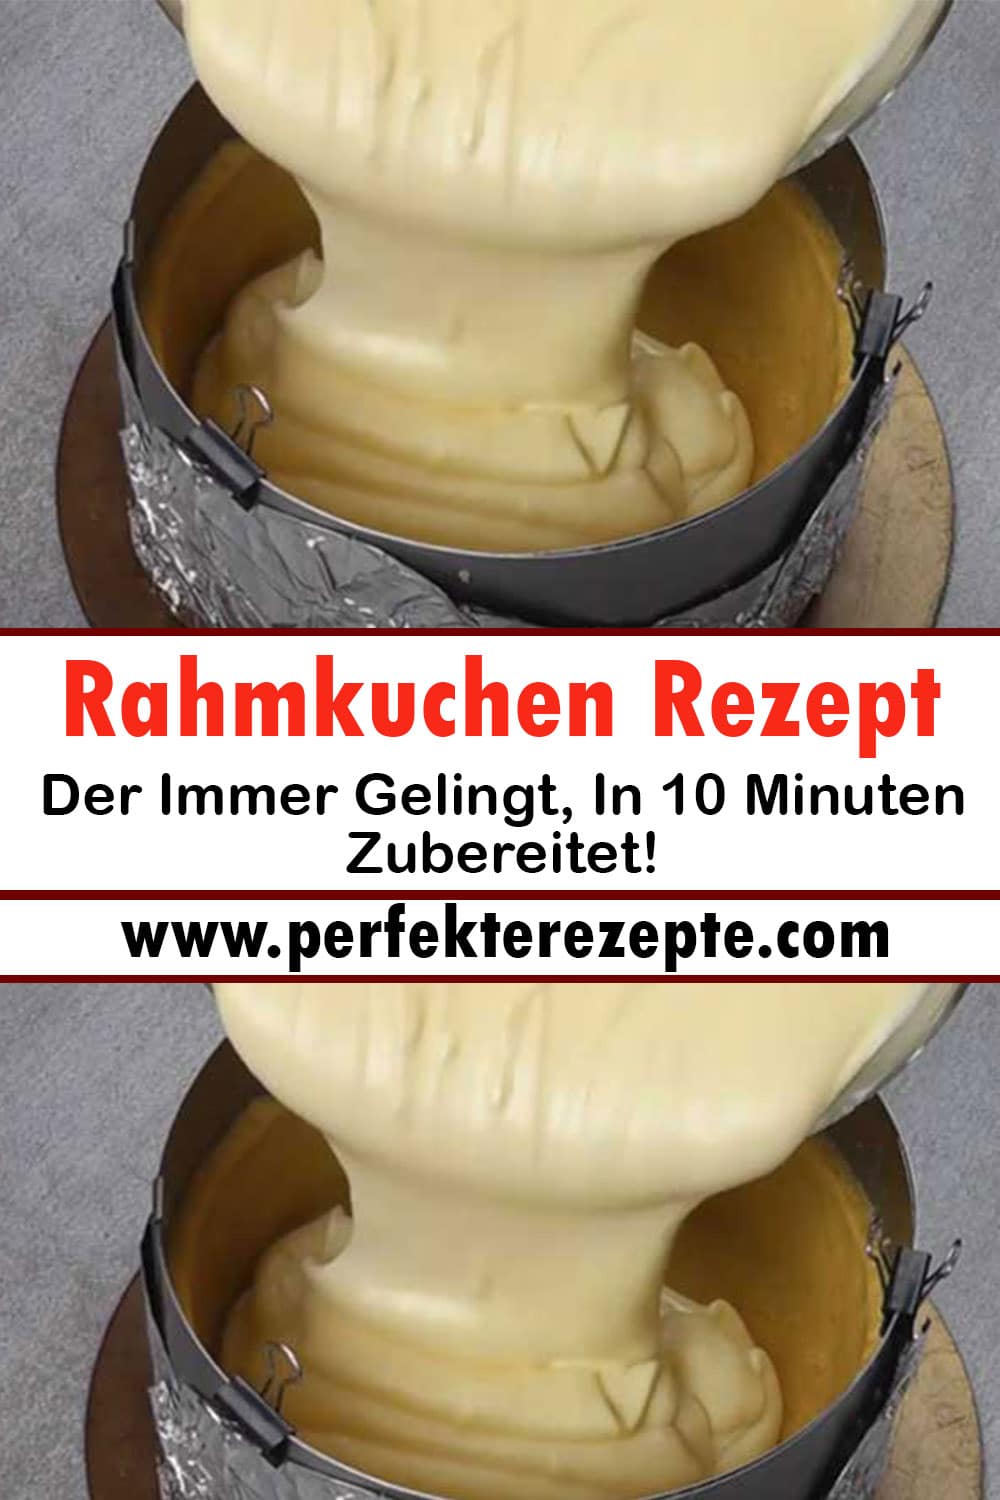 Rahmkuchen Rezept Der Immer Gelingt, In 10 Minuten Zubereitet!